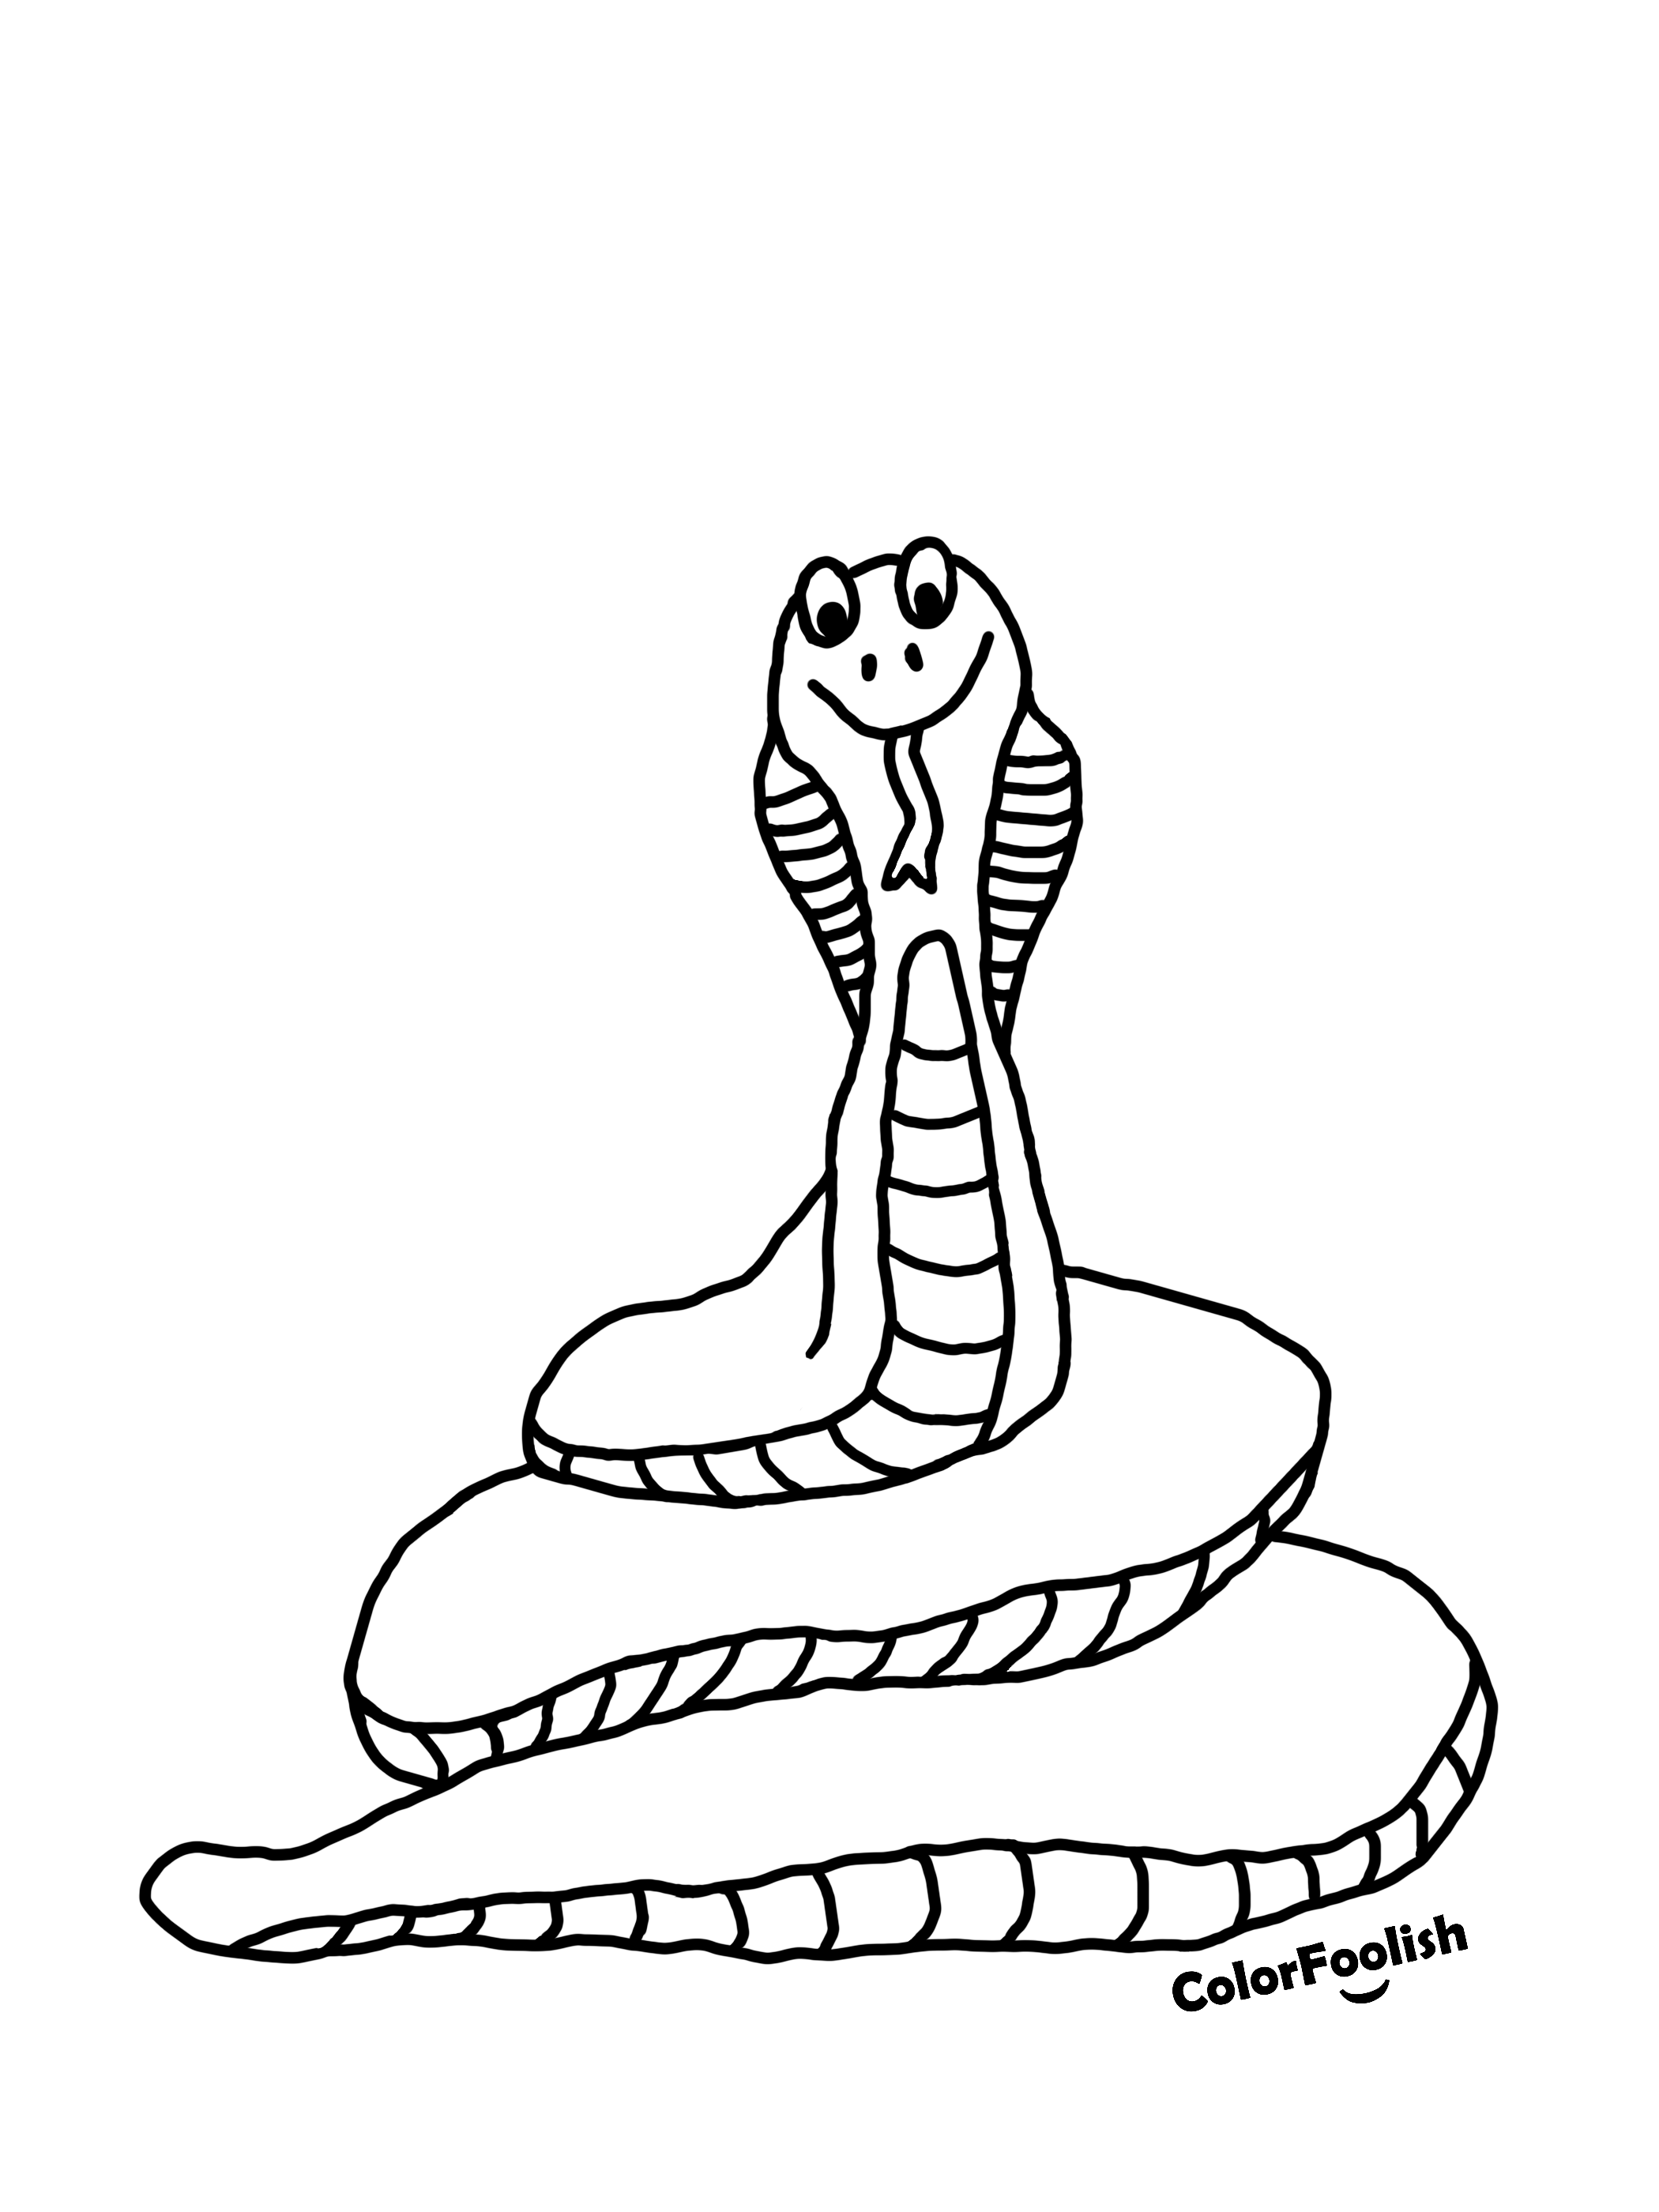 Spalvotas apvyniotos gyvatės puslapis